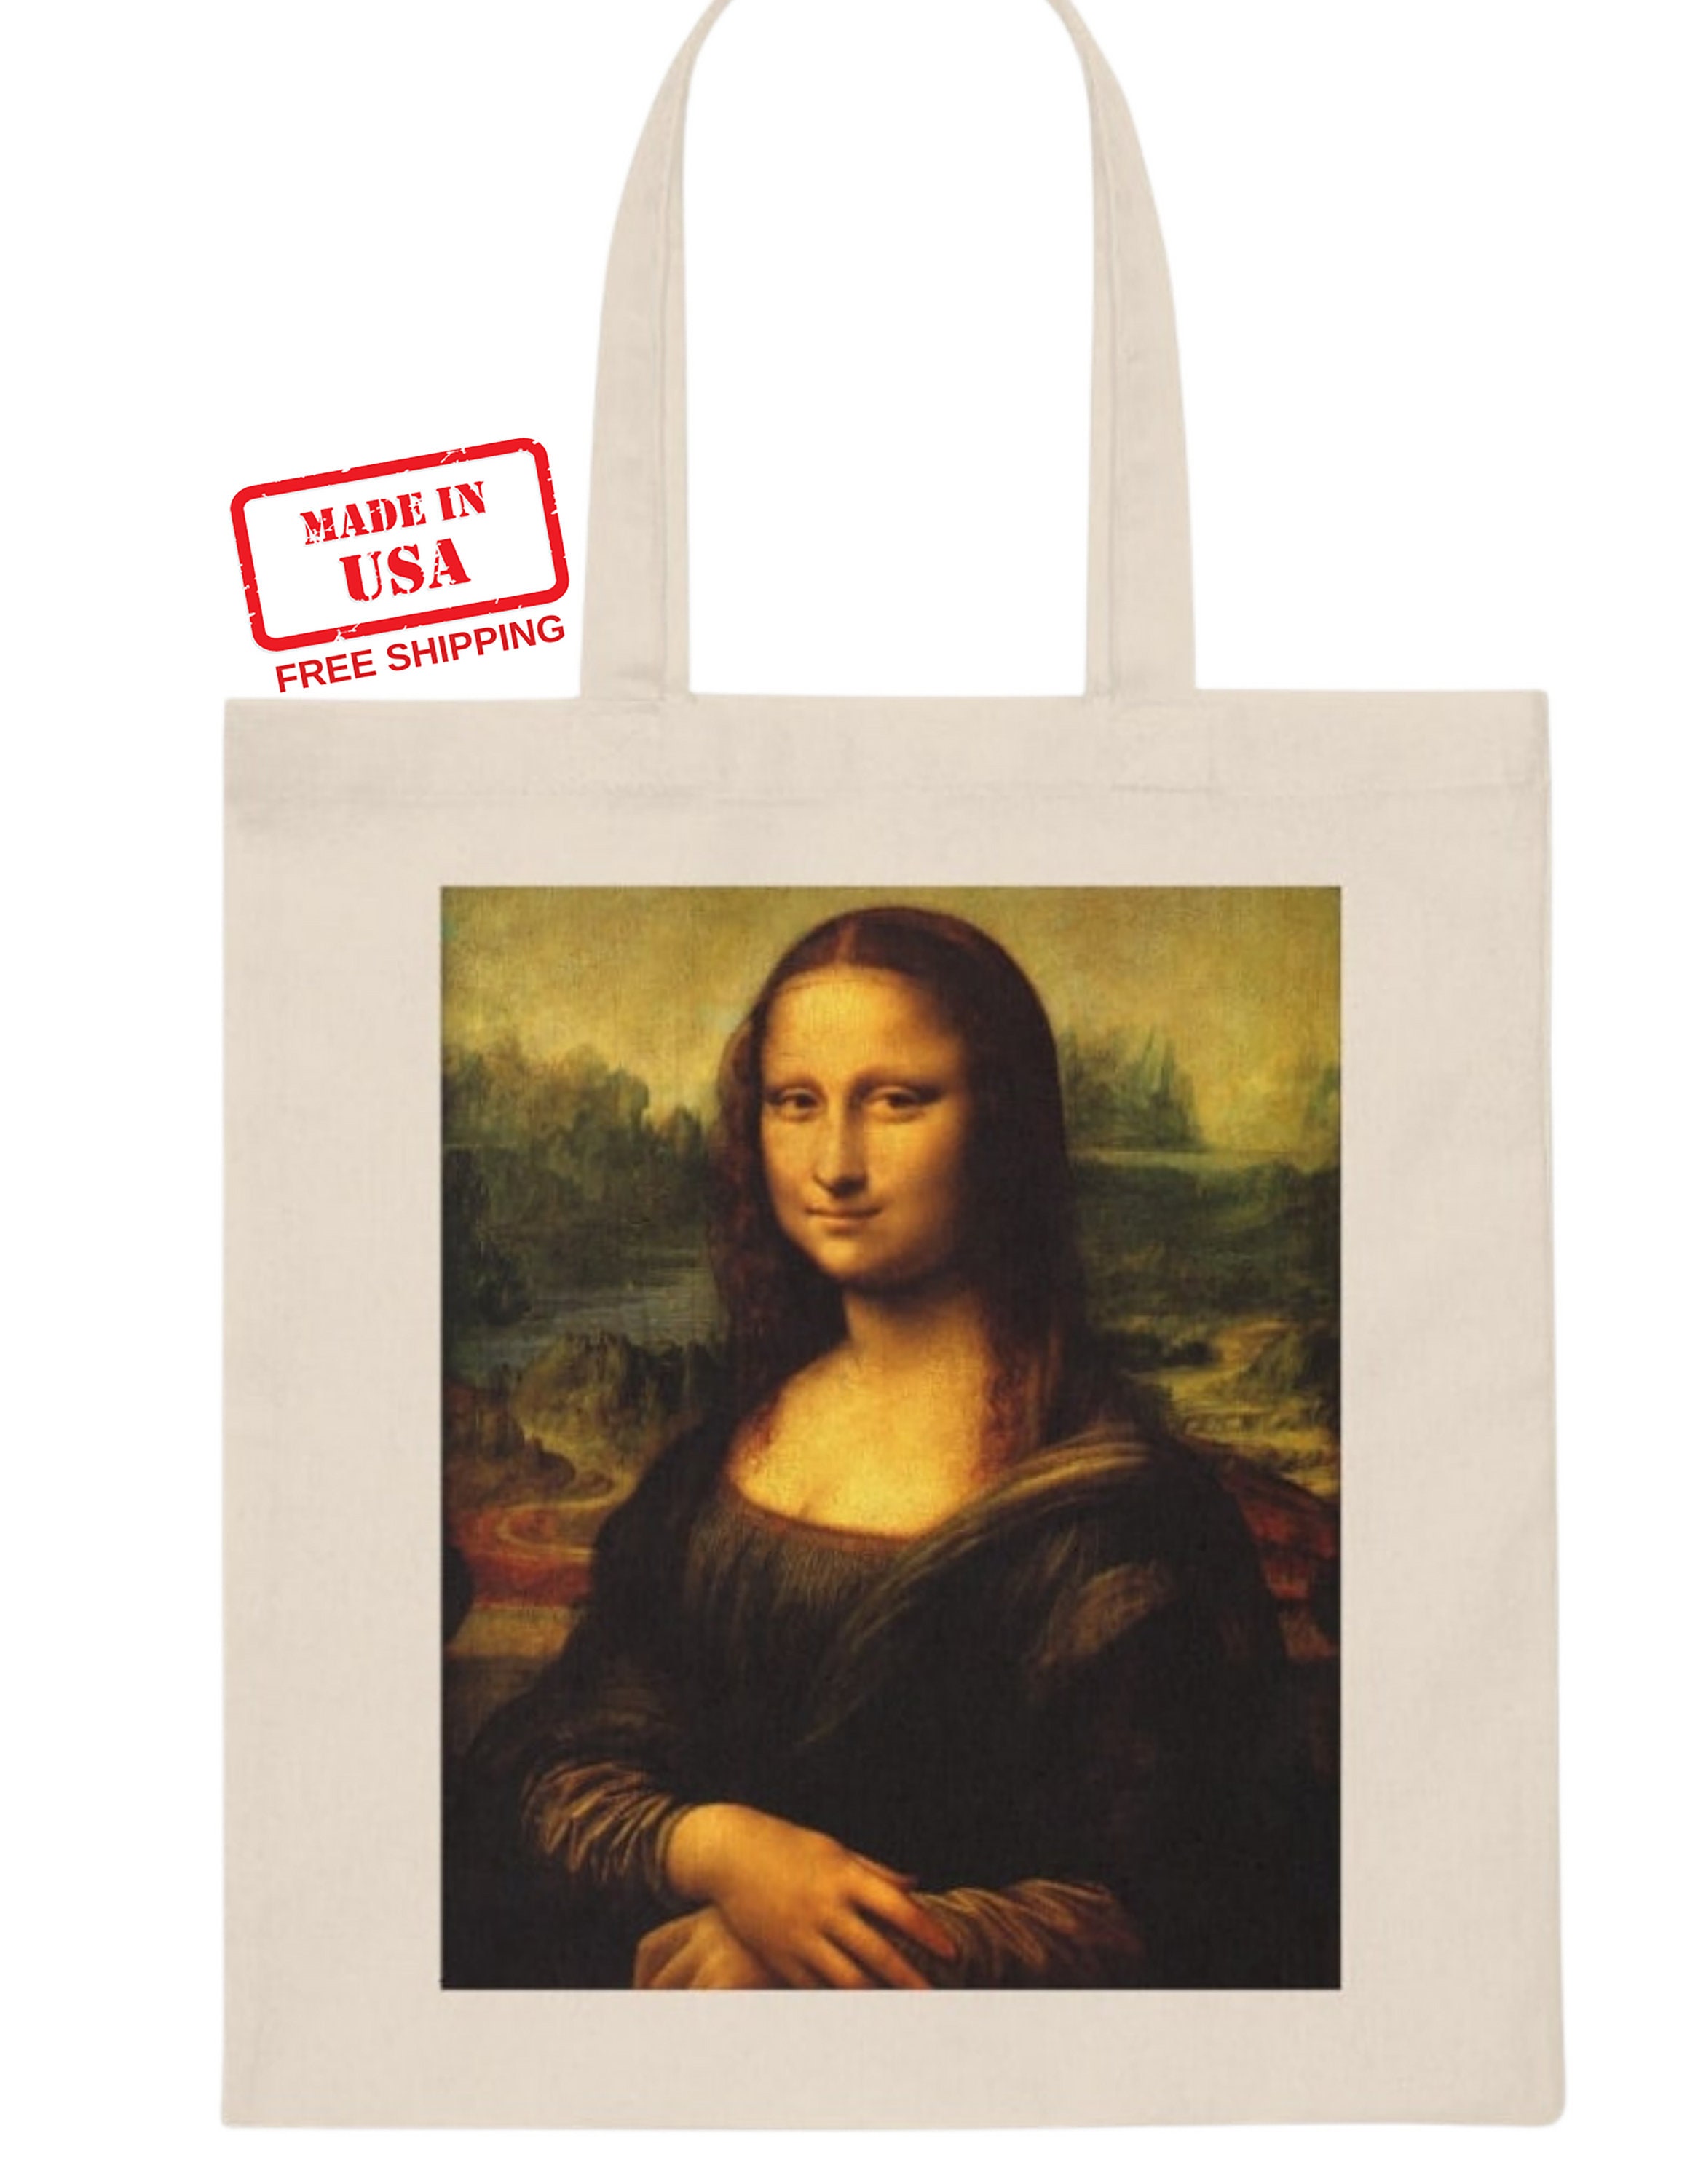 Emily in Paris Tote Bag Mona Lisa Canvas Tote Bag 